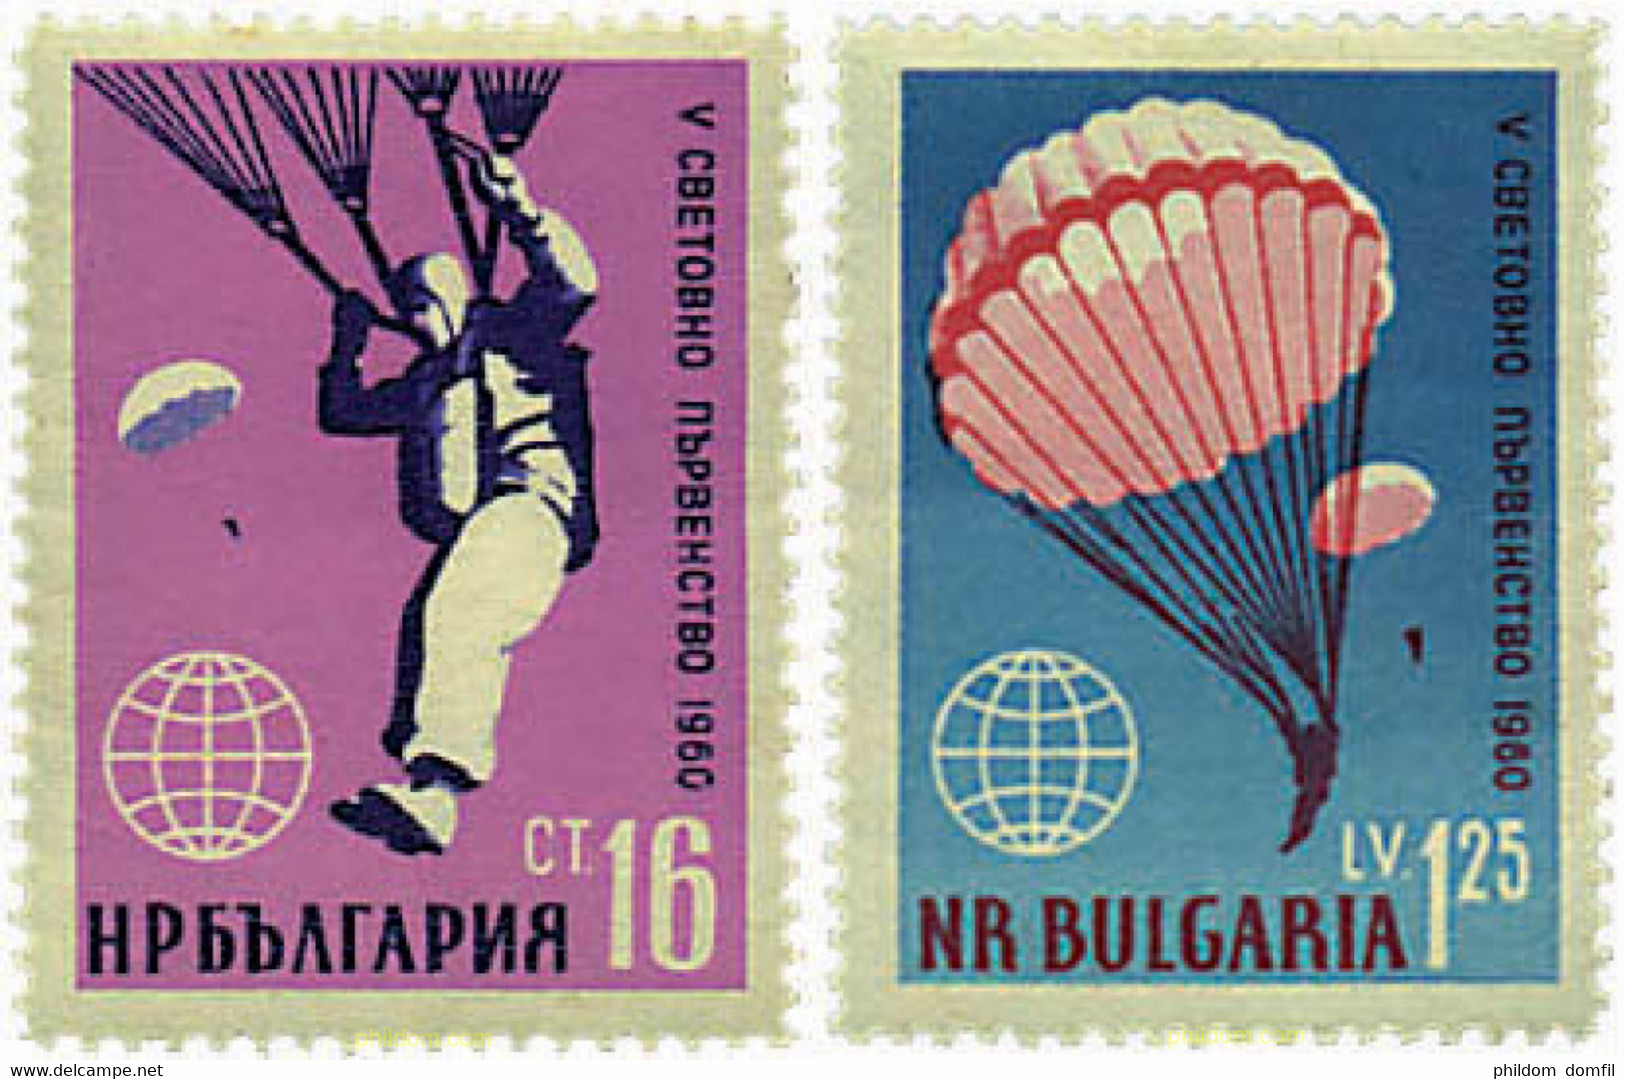 80484 MNH BULGARIA 1960 5 CAMPEONATO MUNDIAL DE PARACAIDISMO - Parachutespringen